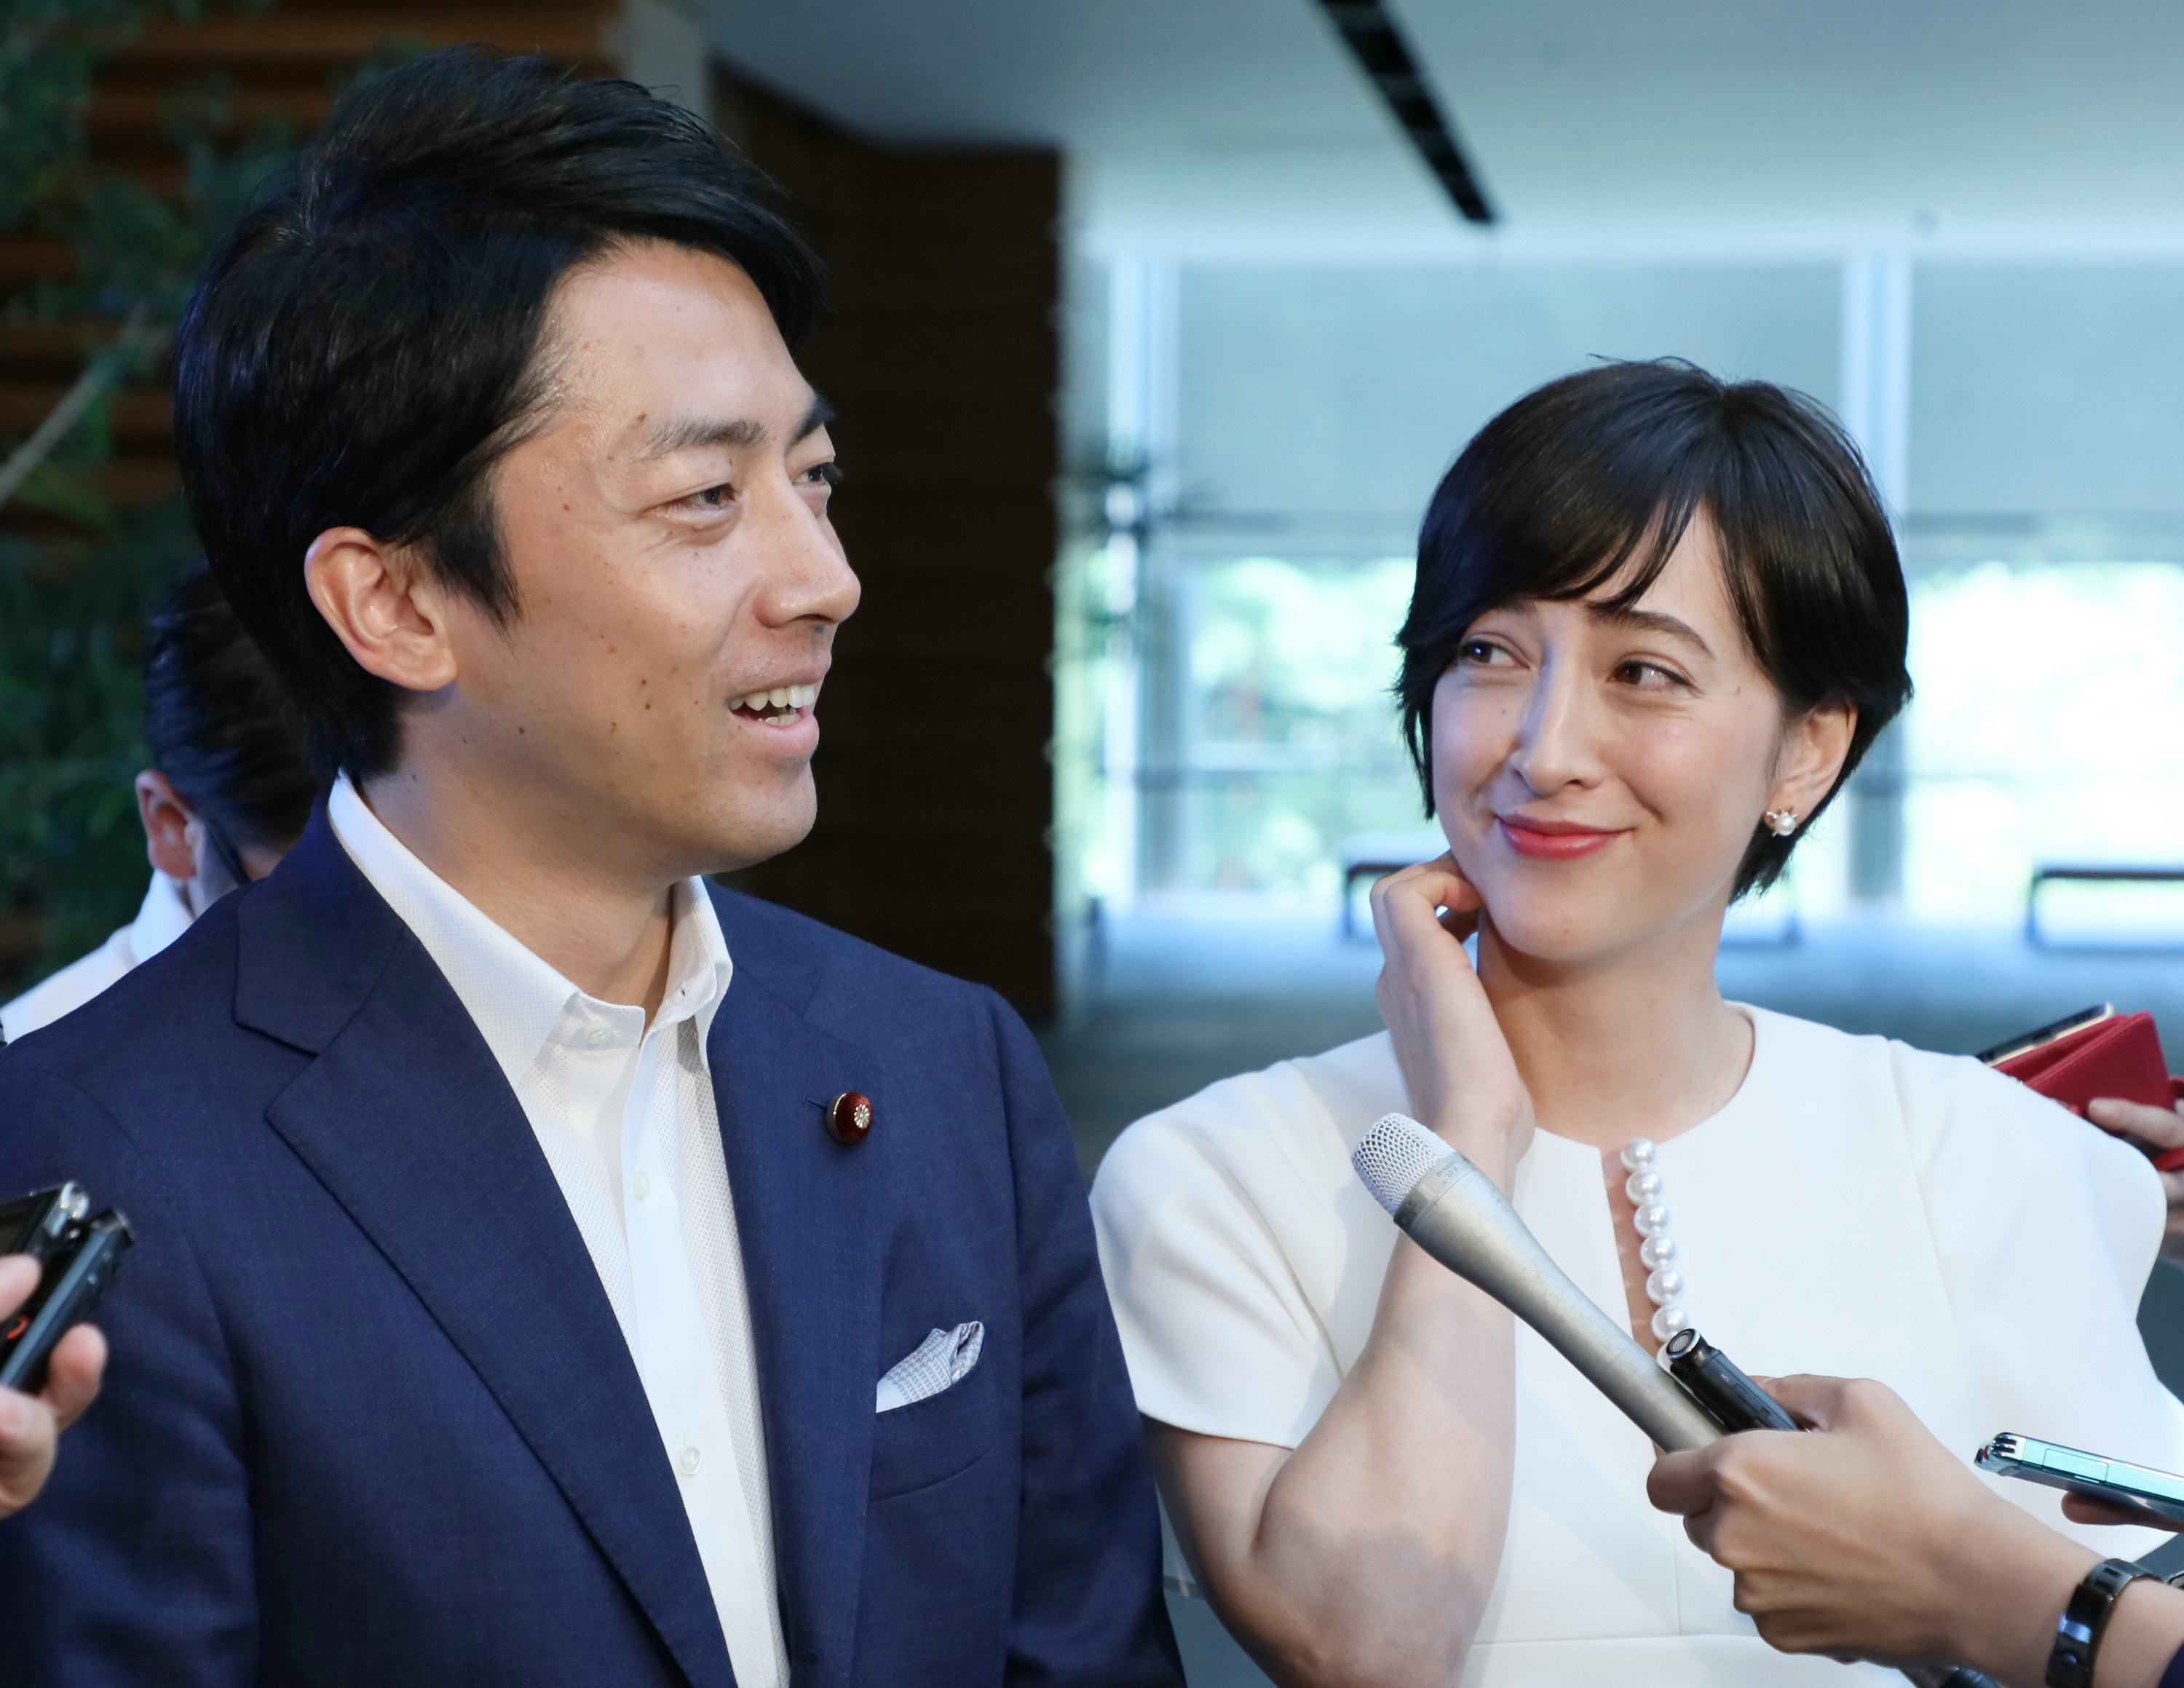 滝川クリステルさん、小泉進次郎議員との結婚発表ドレスが話題